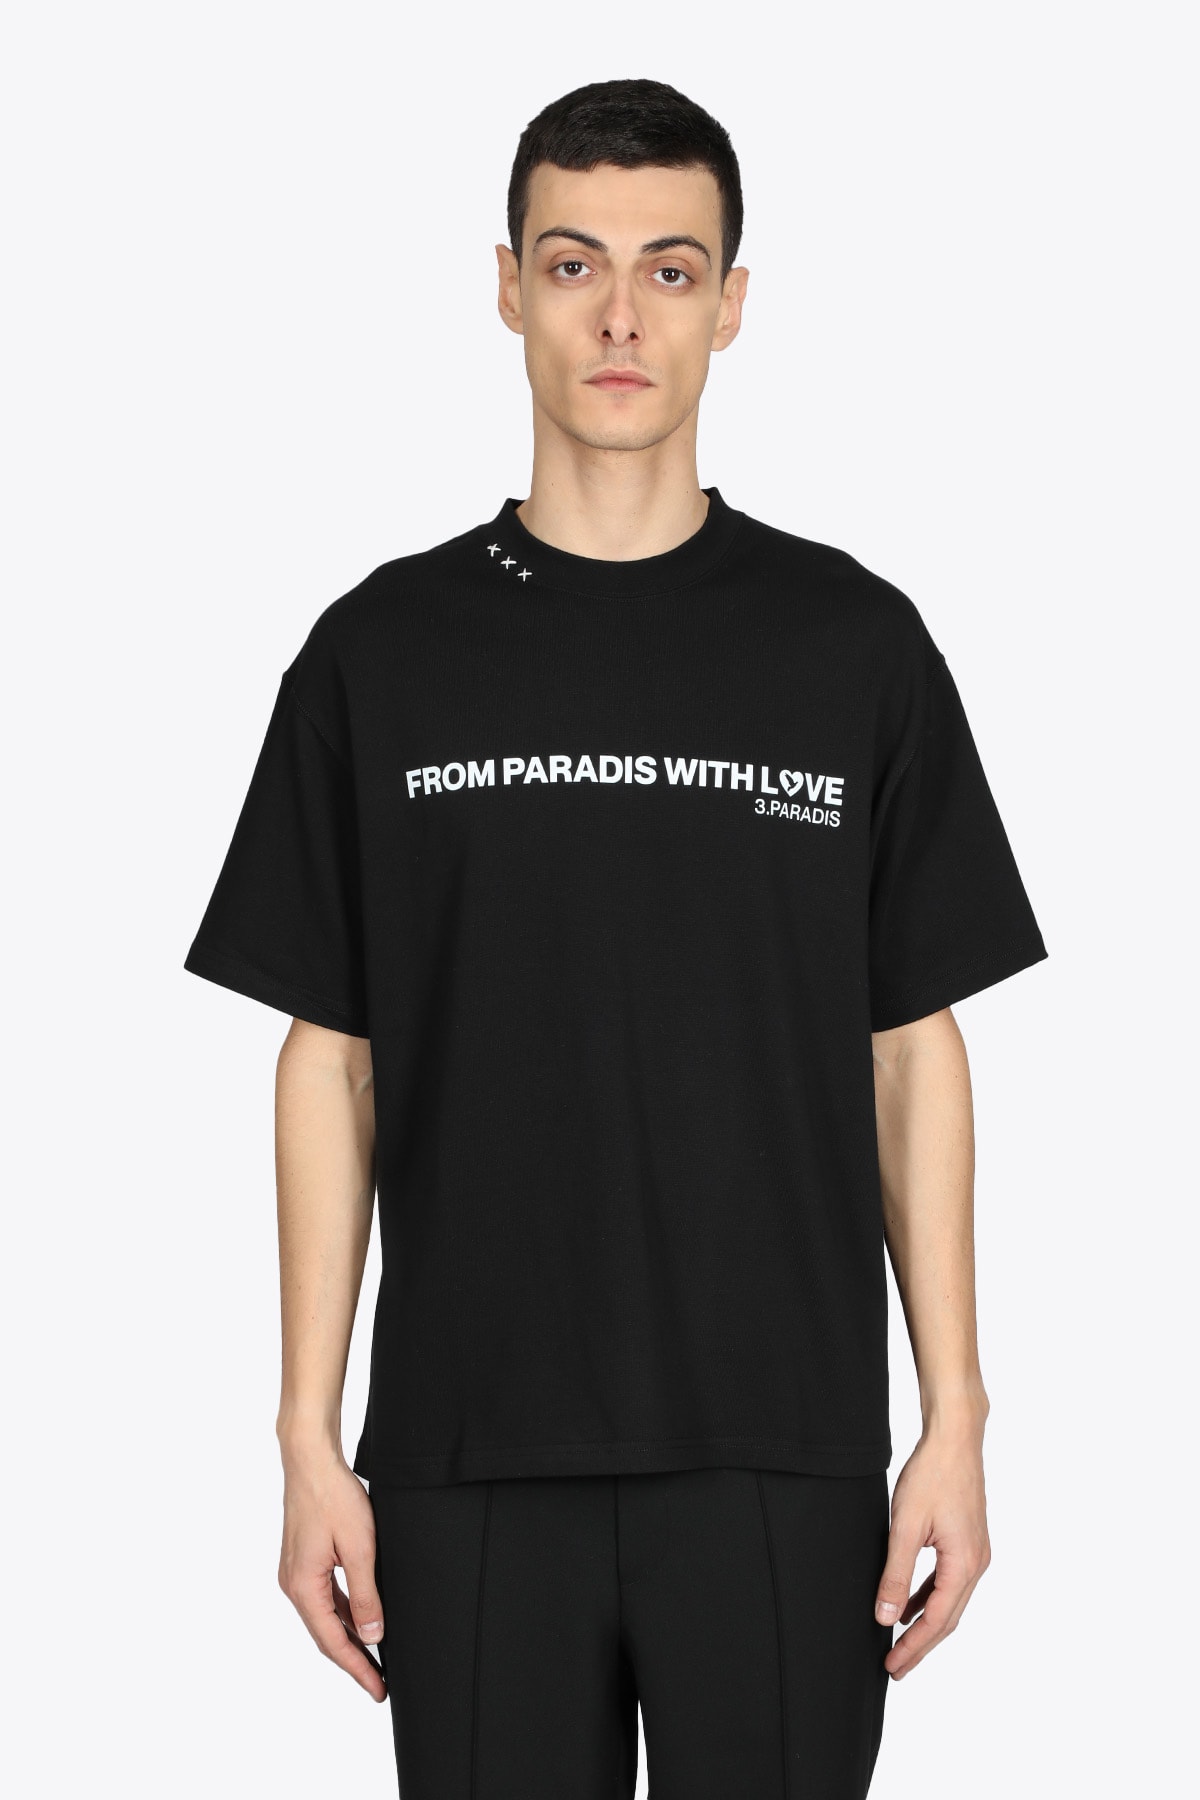 3.Paradis Gradient T-shirt Black cotton t-shirt with front slogan